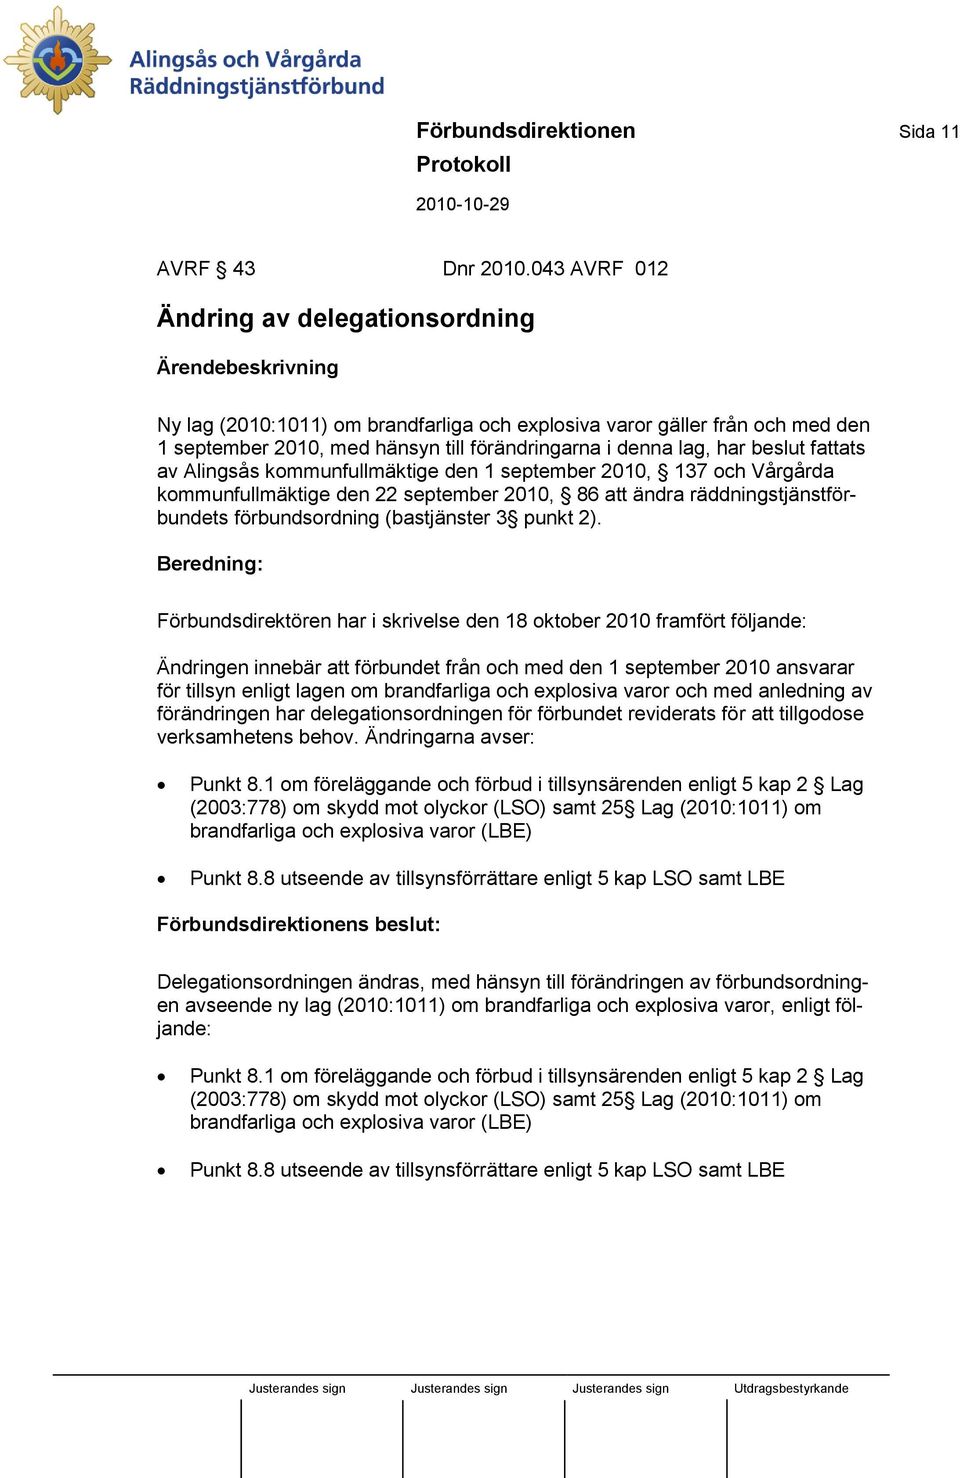 lag, har beslut fattats av Alingsås kommunfullmäktige den 1 september 2010, 137 och Vårgårda kommunfullmäktige den 22 september 2010, 86 att ändra räddningstjänstförbundets förbundsordning